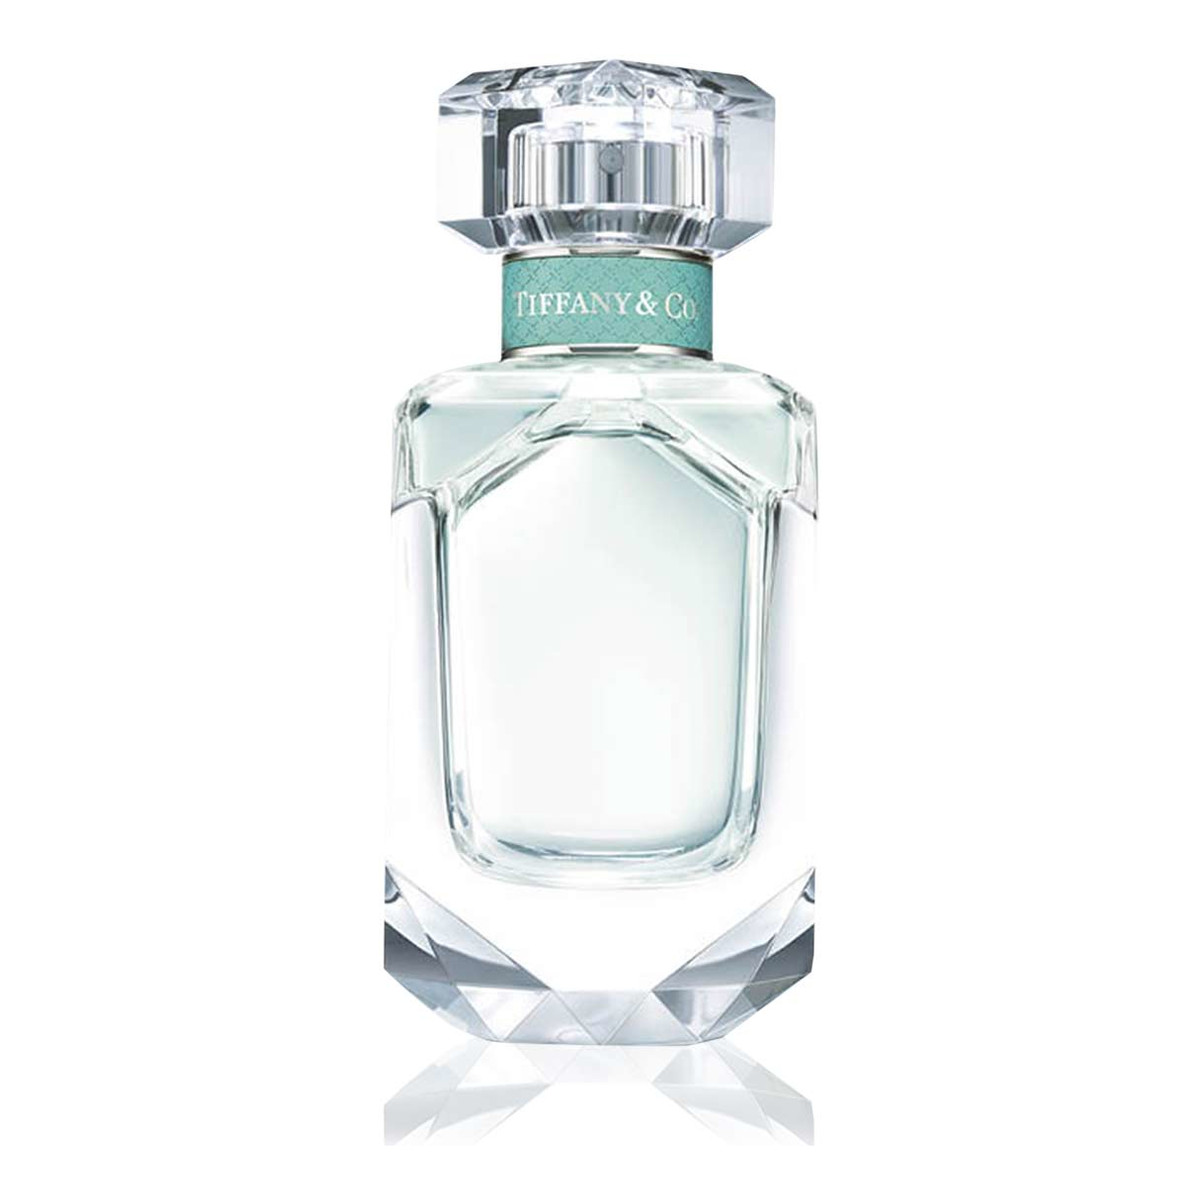 Tiffany & Co. woda perfumowana 75ml